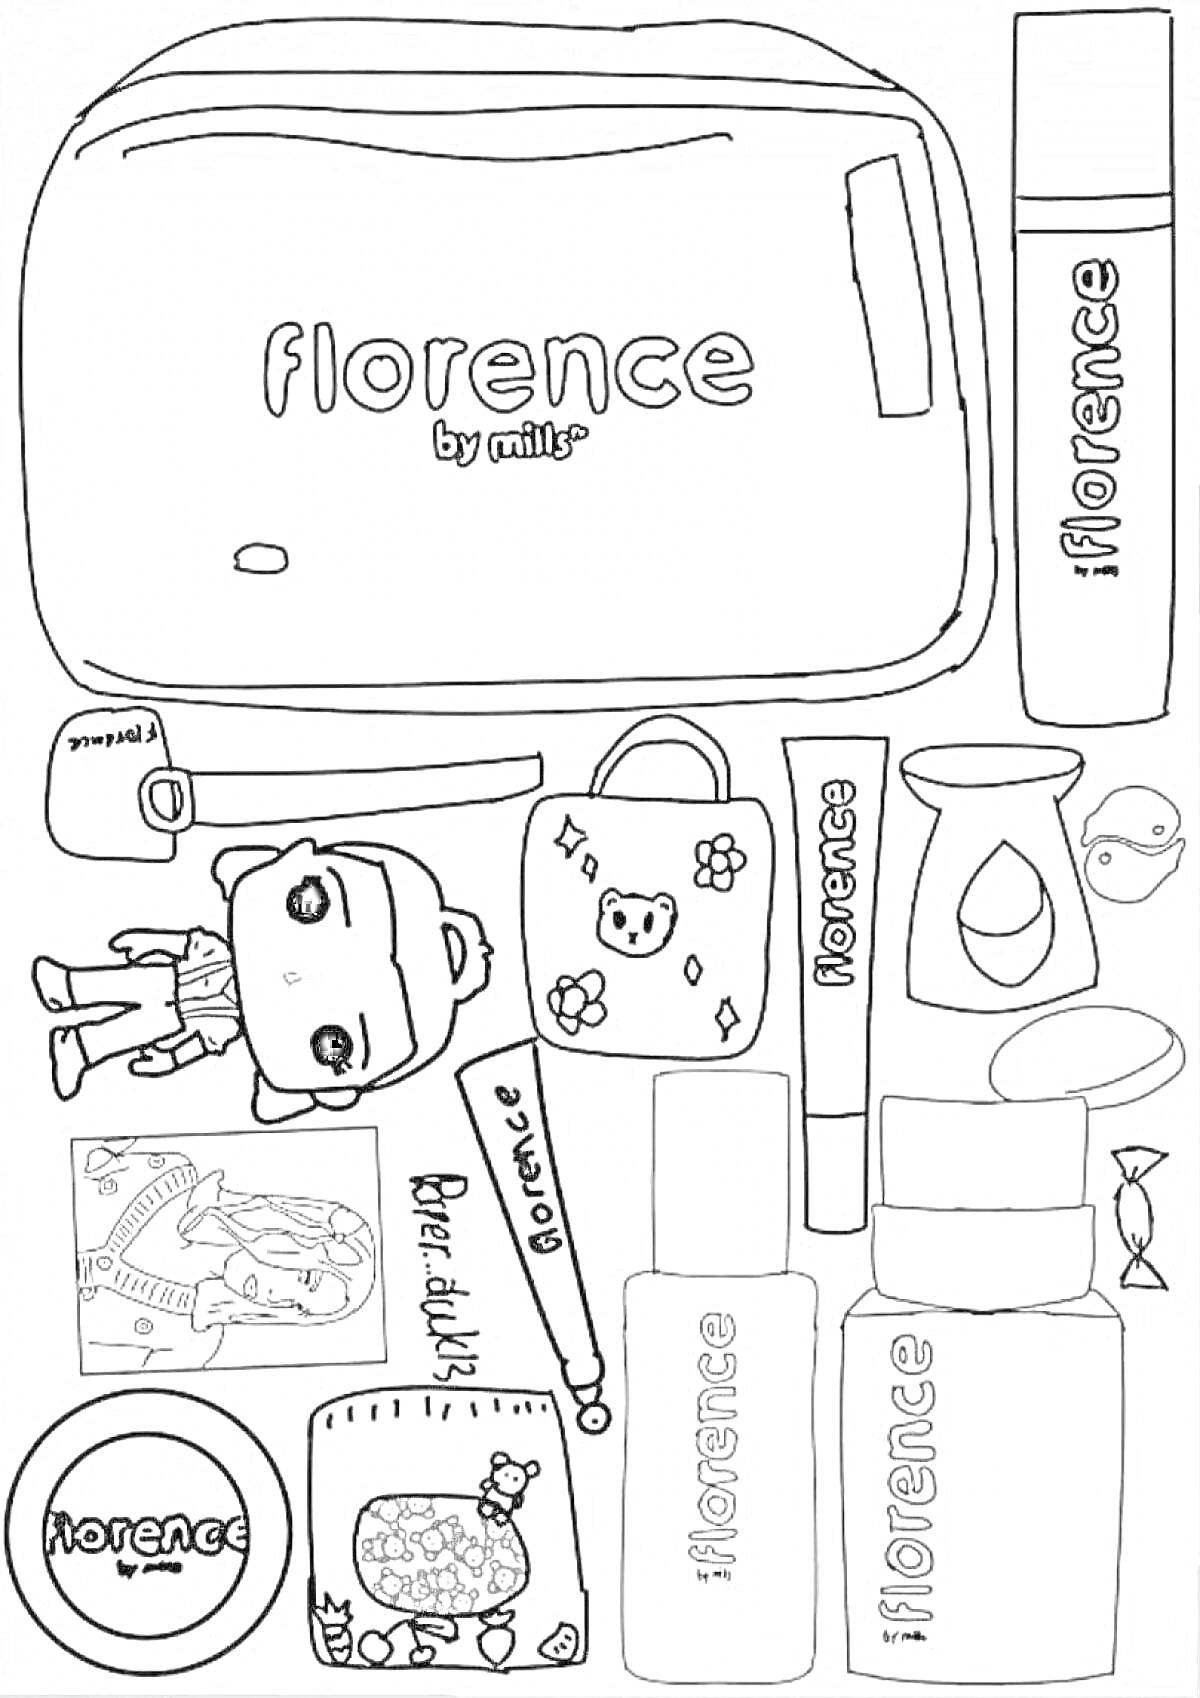 Раскраска Лалафанфан утка с одеждой, рюкзаком, косметическими средствами, кружкой, молочной конфетой и фотографиями